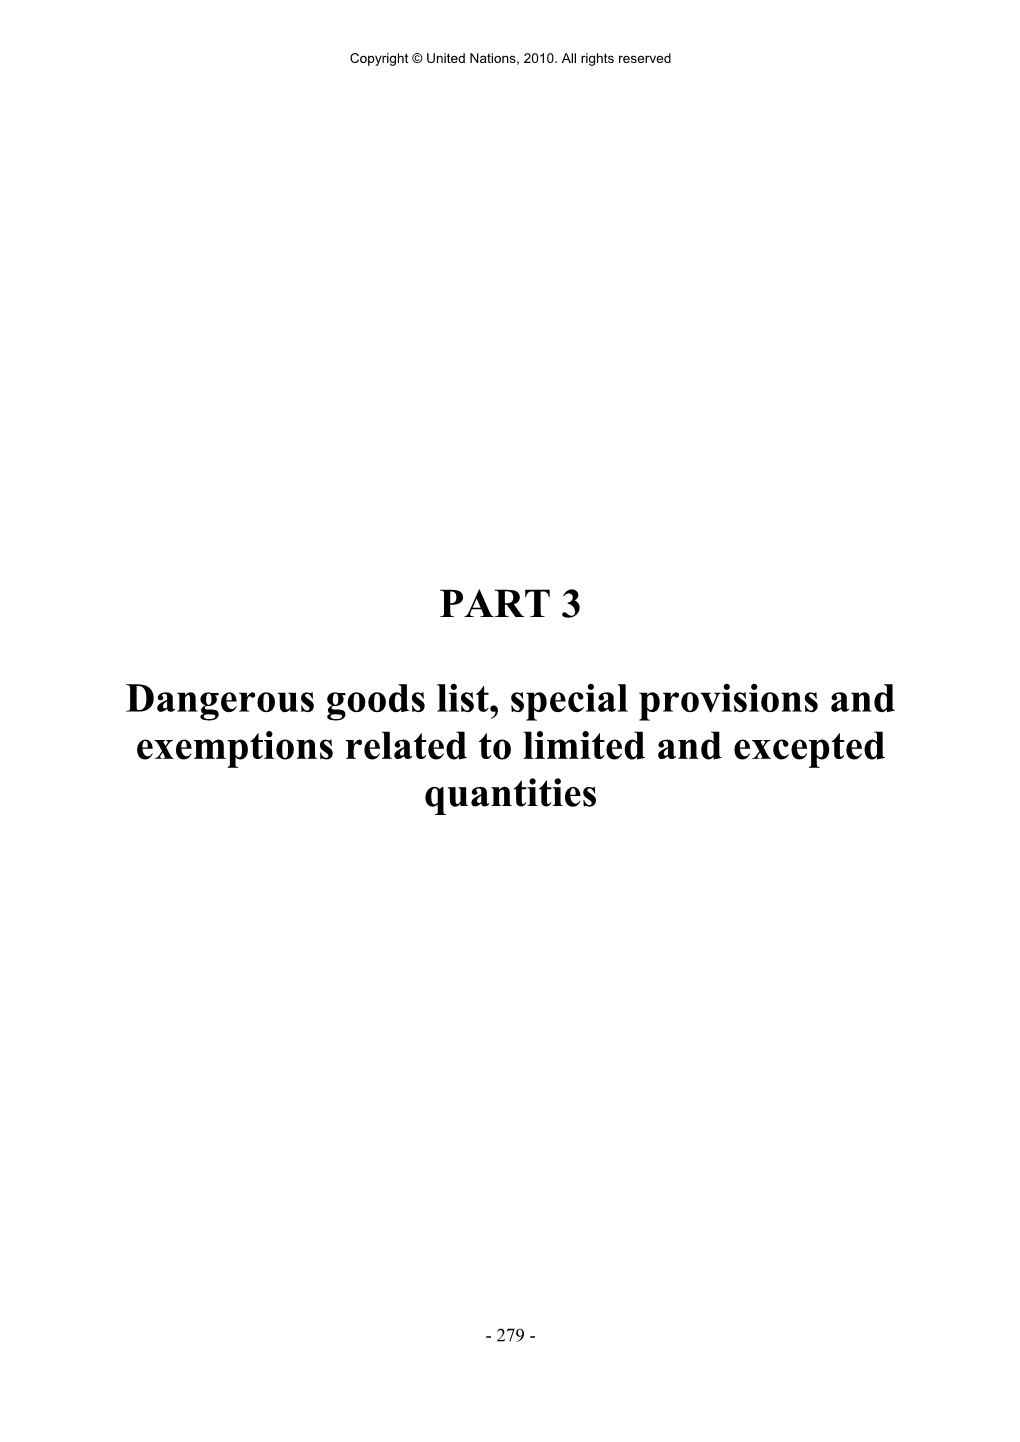 PART 3 Dangerous Goods List, Special Provisions